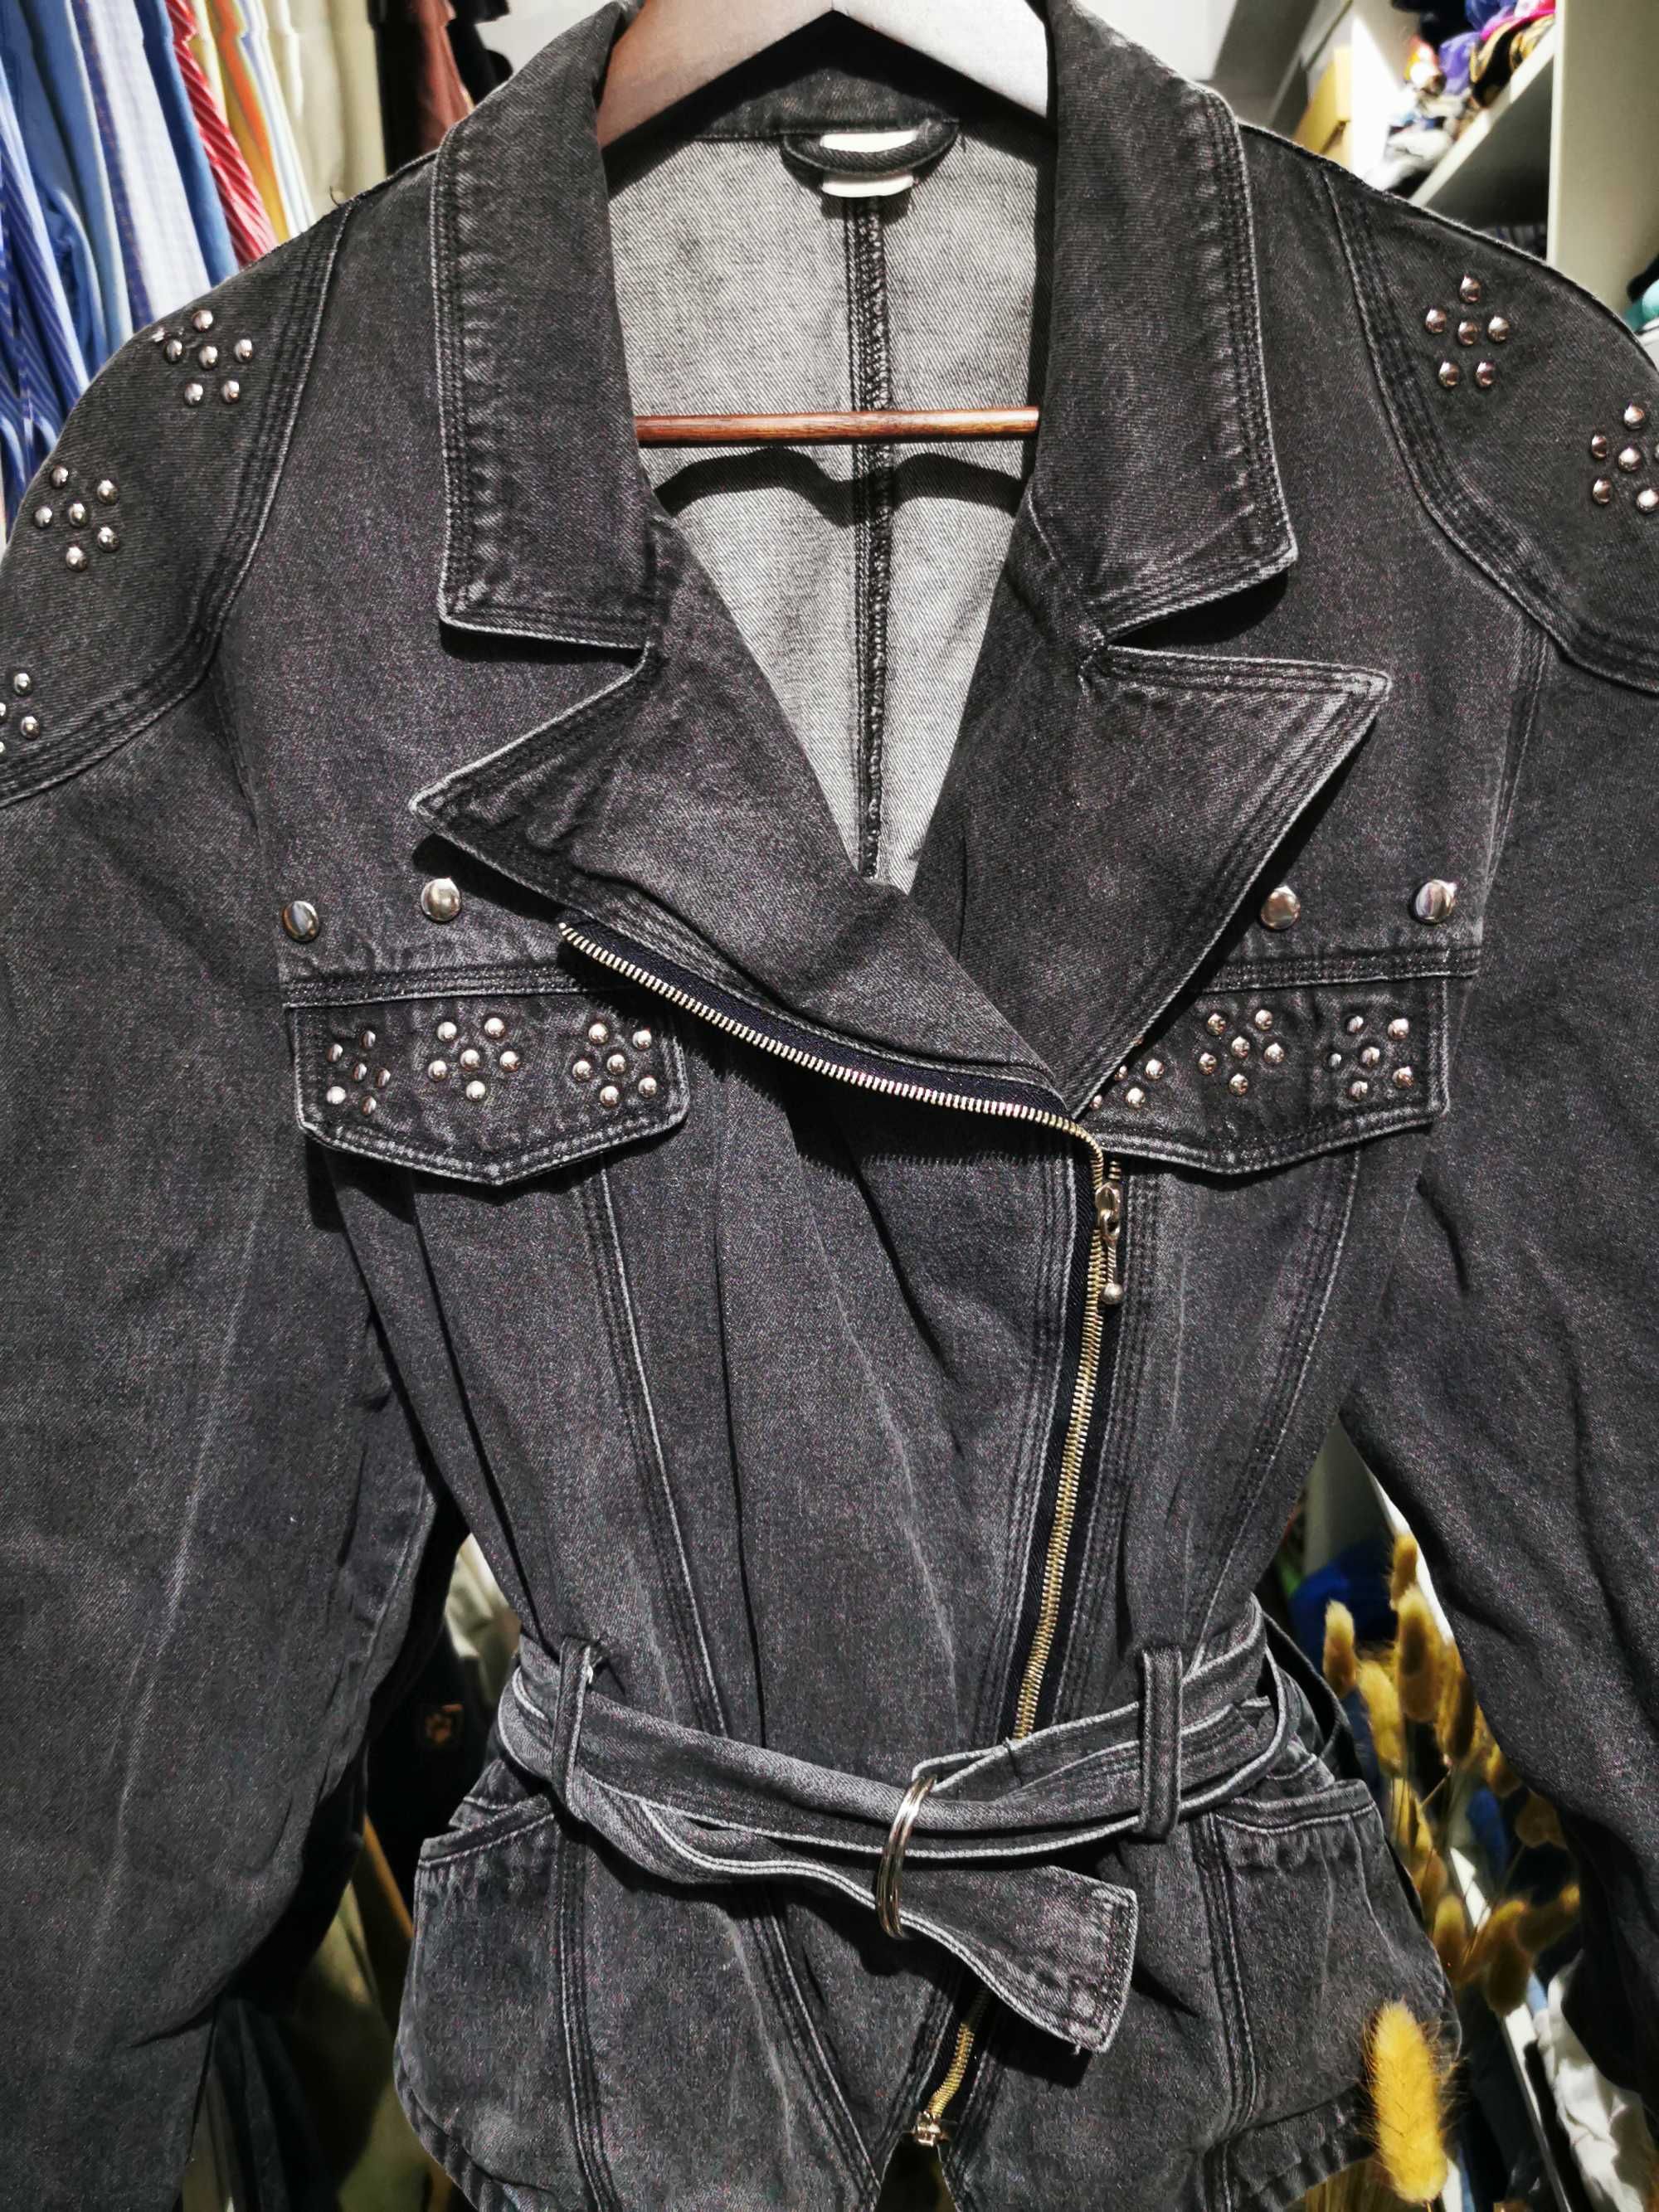 Jacketa blug vintage cu aplicatii metalice